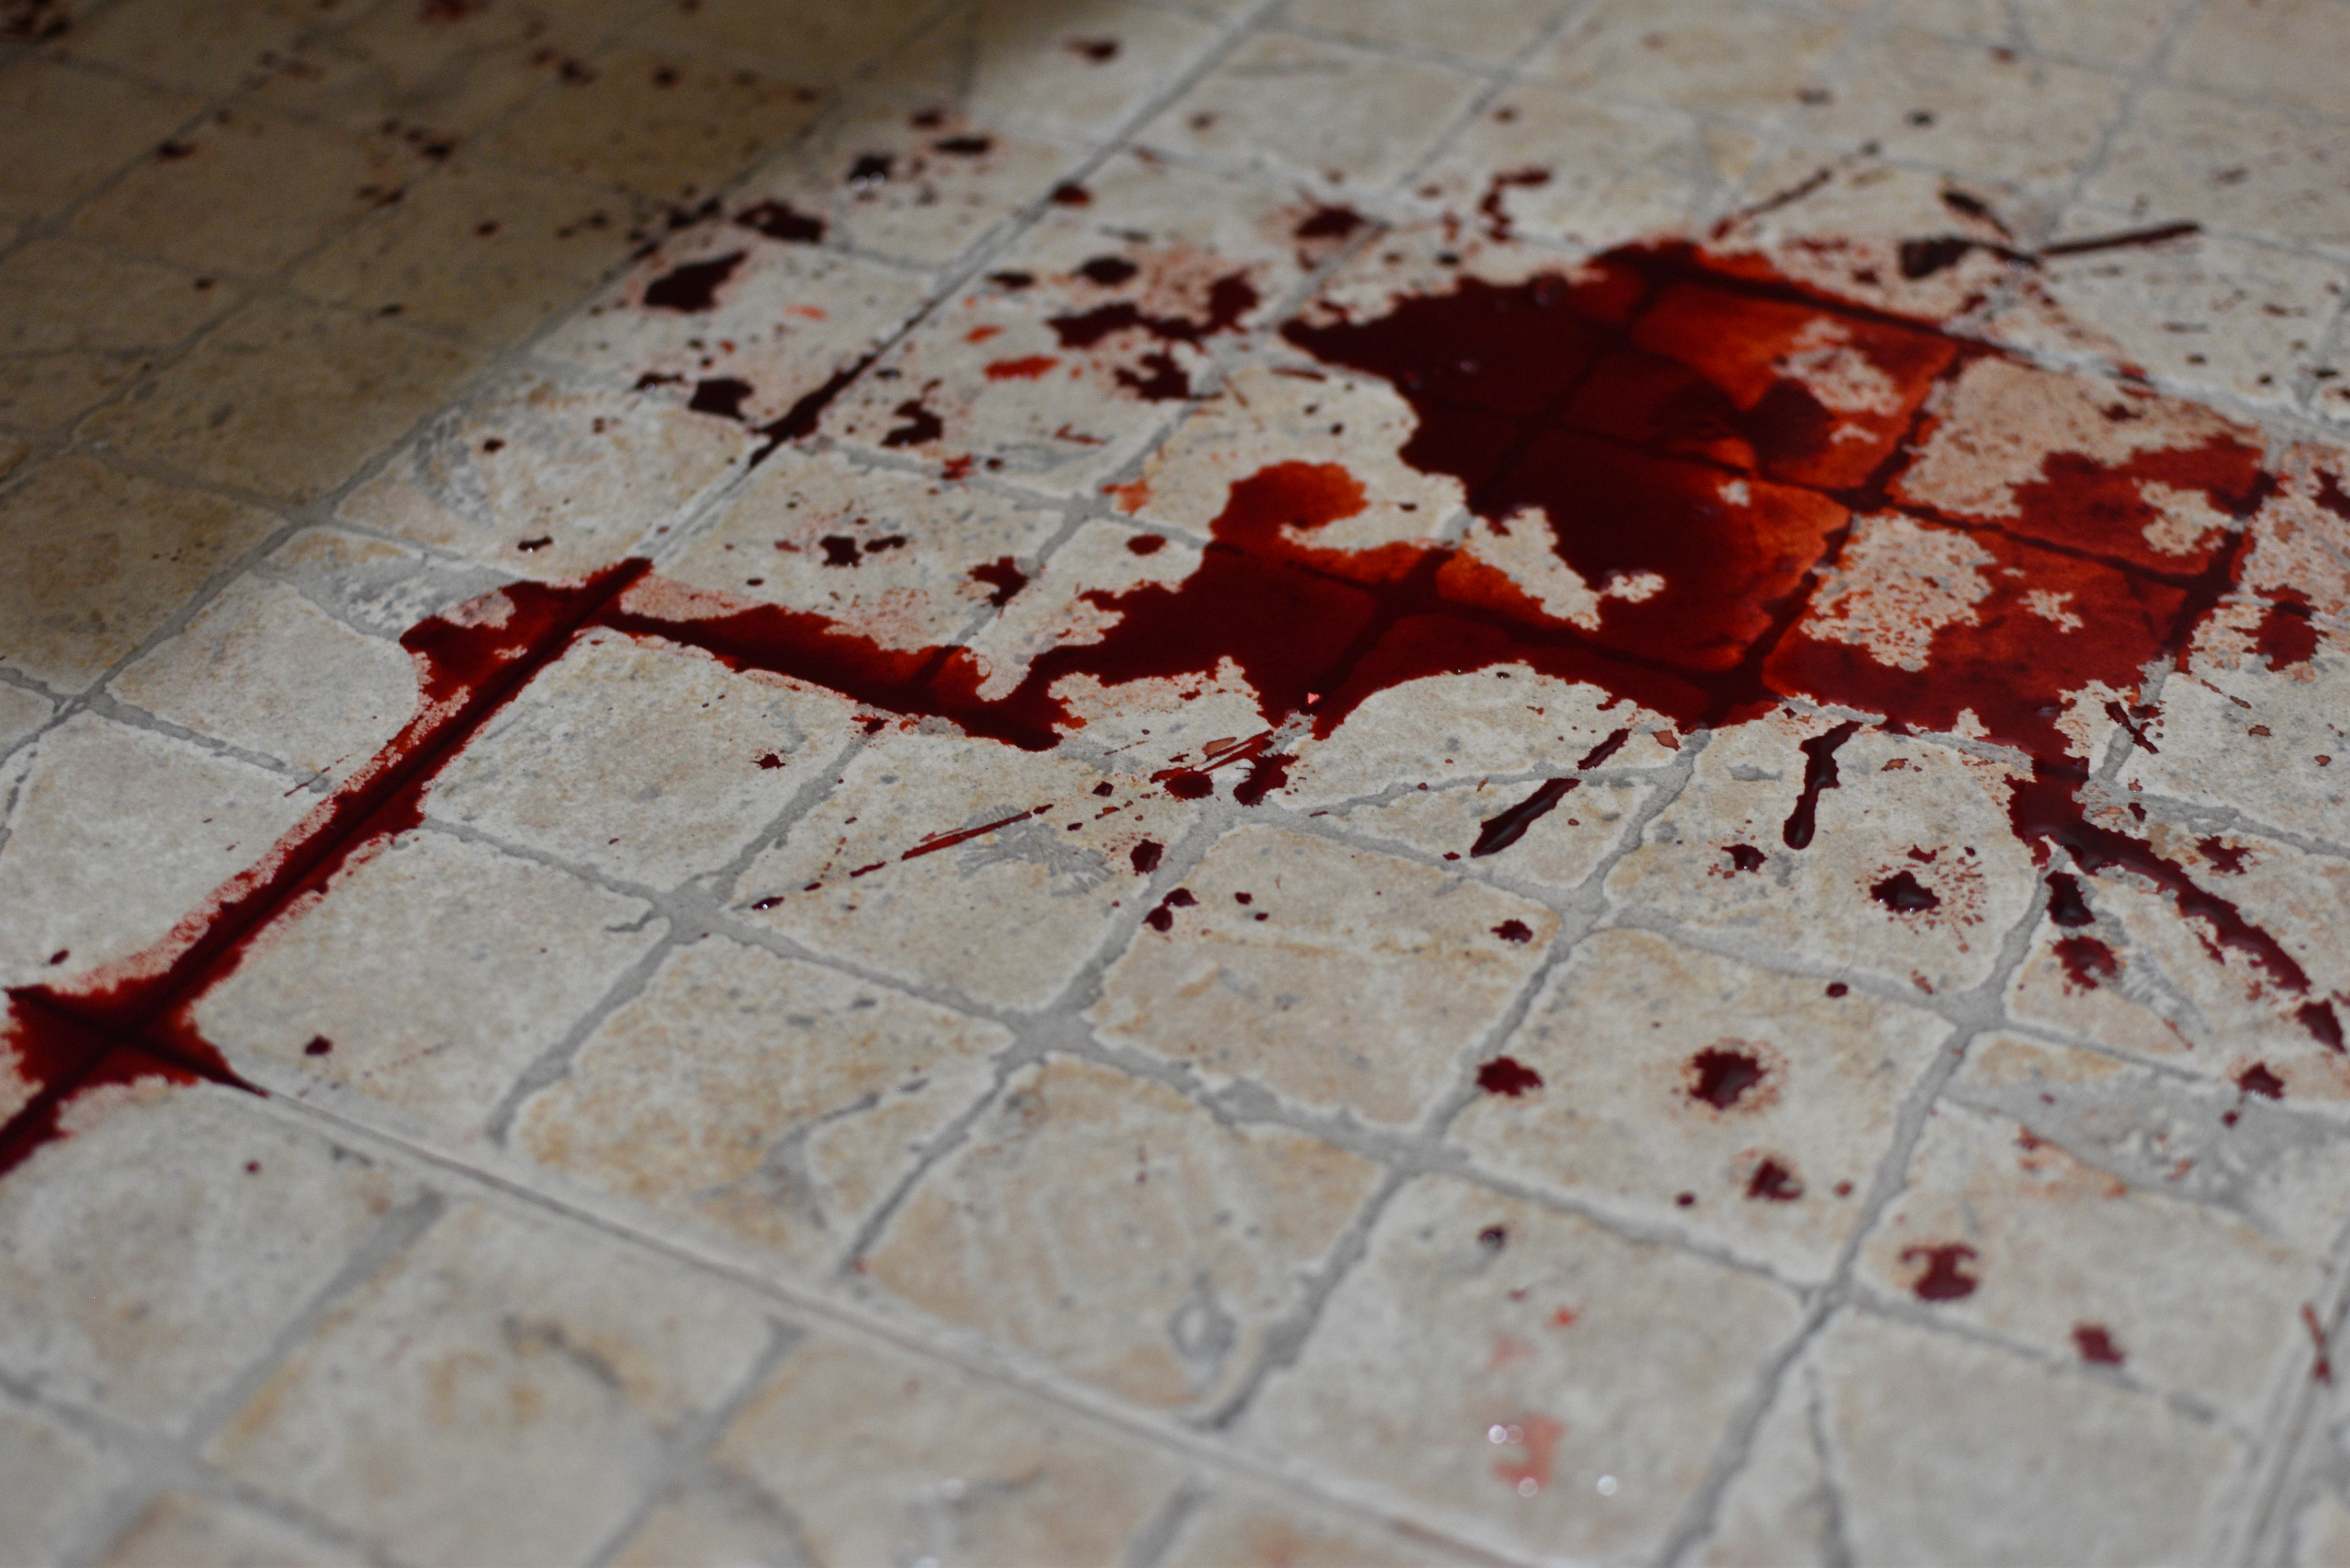 Blood on floor | Source: Shutterstock